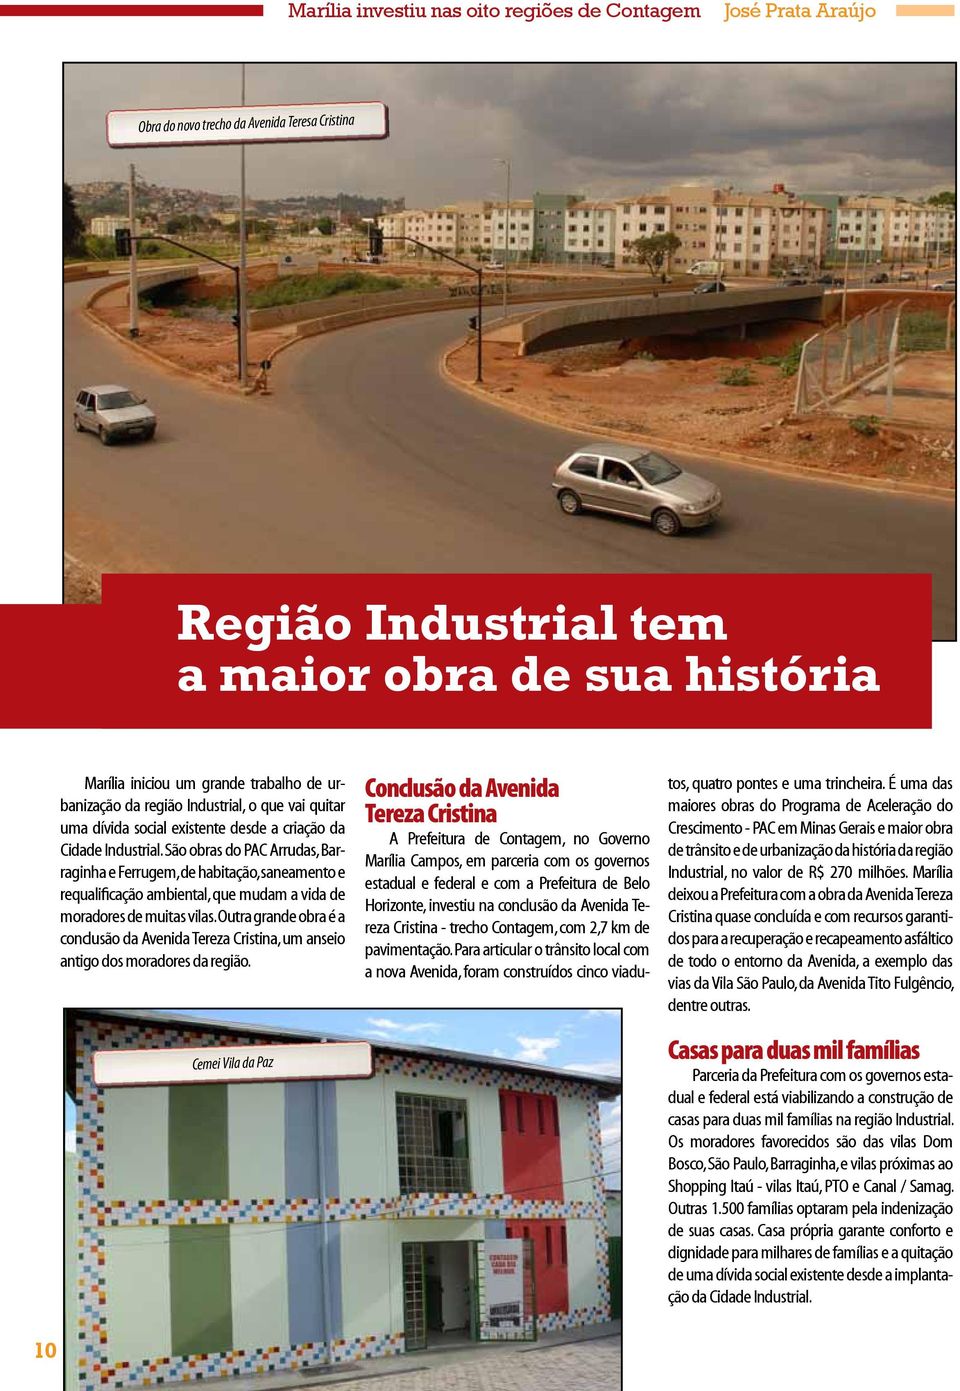 São obras do PAC Arrudas, Barraginha e Ferrugem, de habitação, saneamento e requalificação ambiental, que mudam a vida de moradores de muitas vilas.